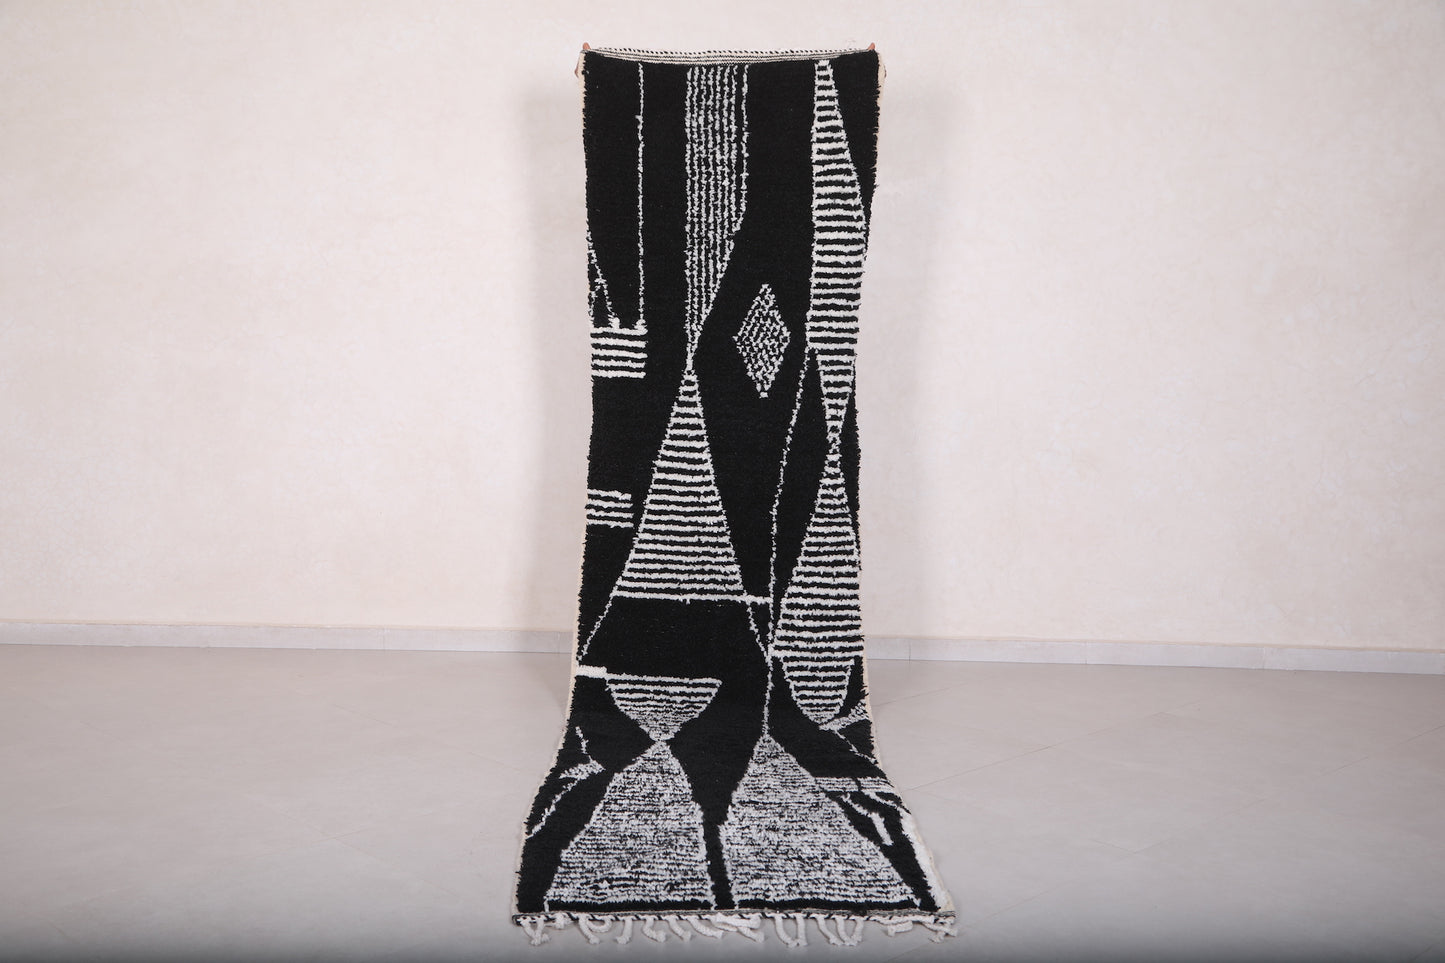 Runner handmade rug, custom wool berber carpet